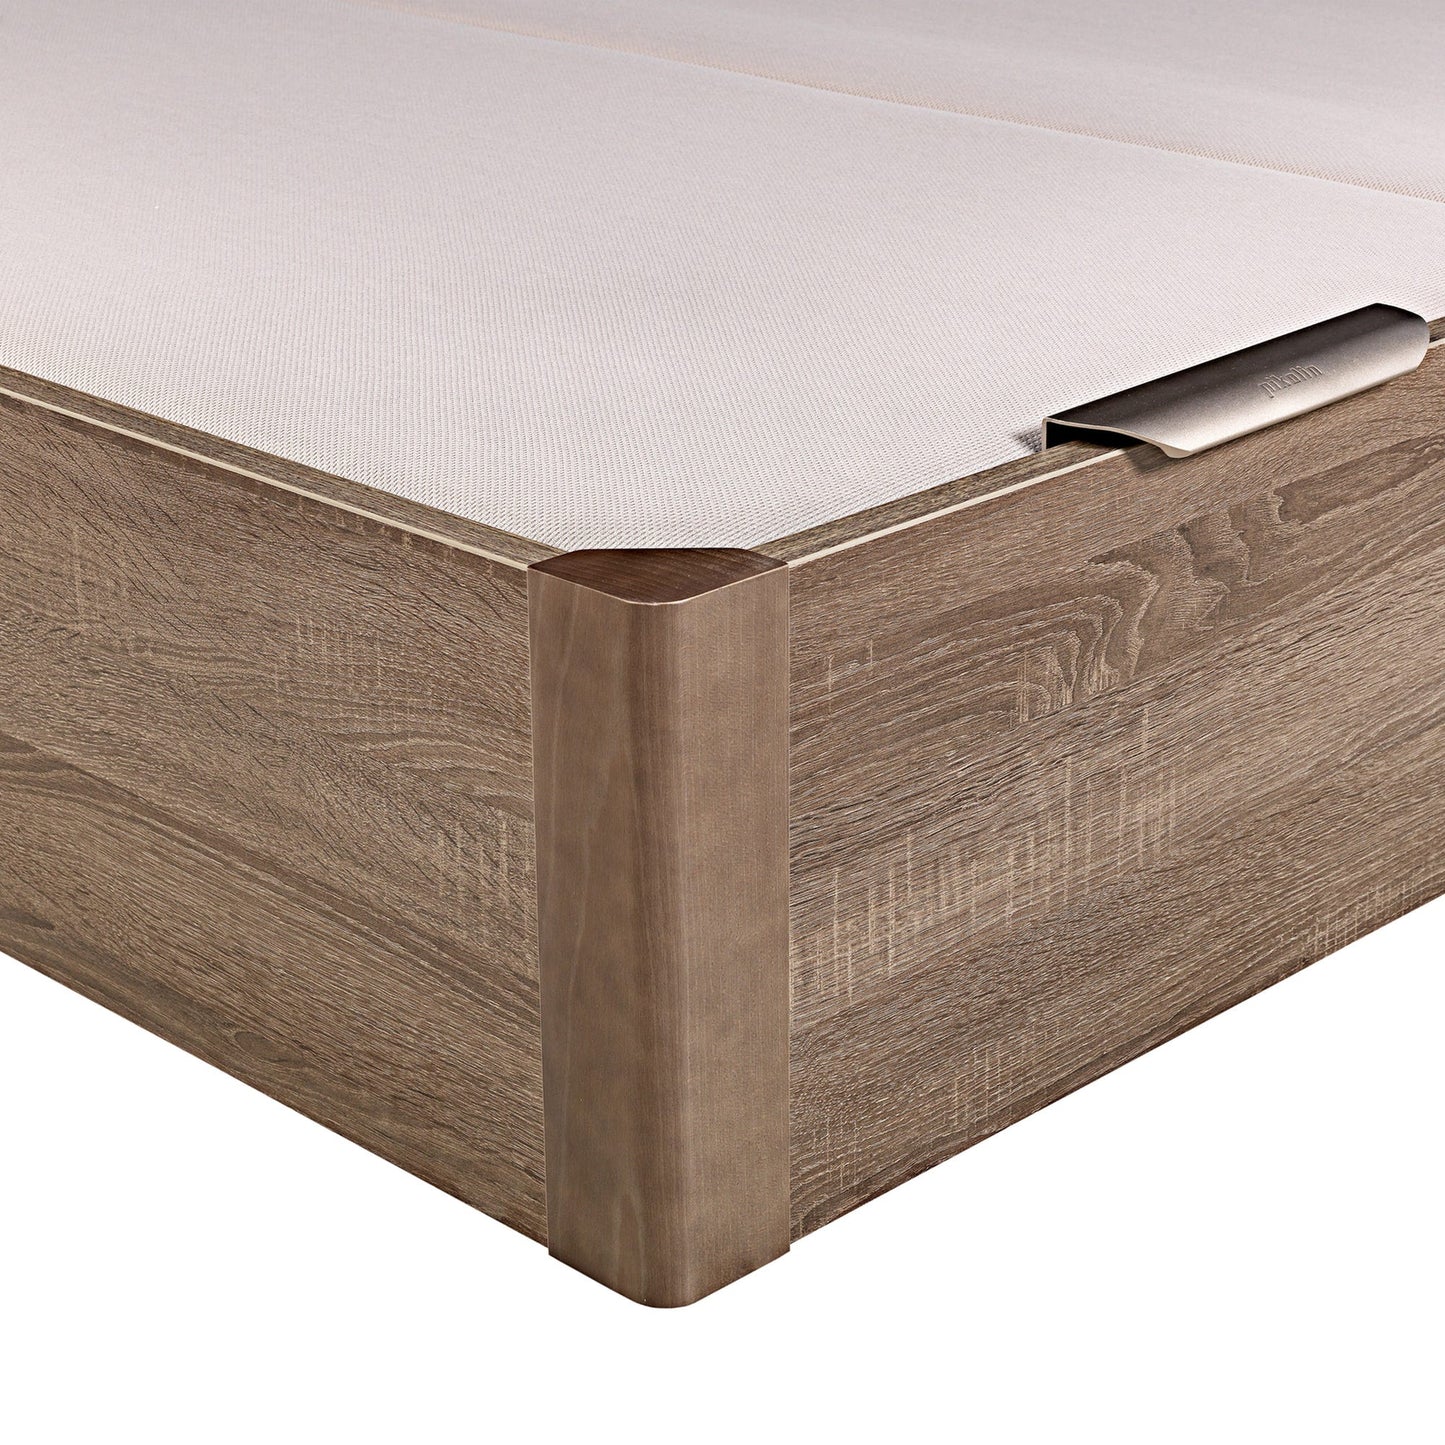 Canapé abatible de madera de tapa doble de color roble - DESIGN - 200x182